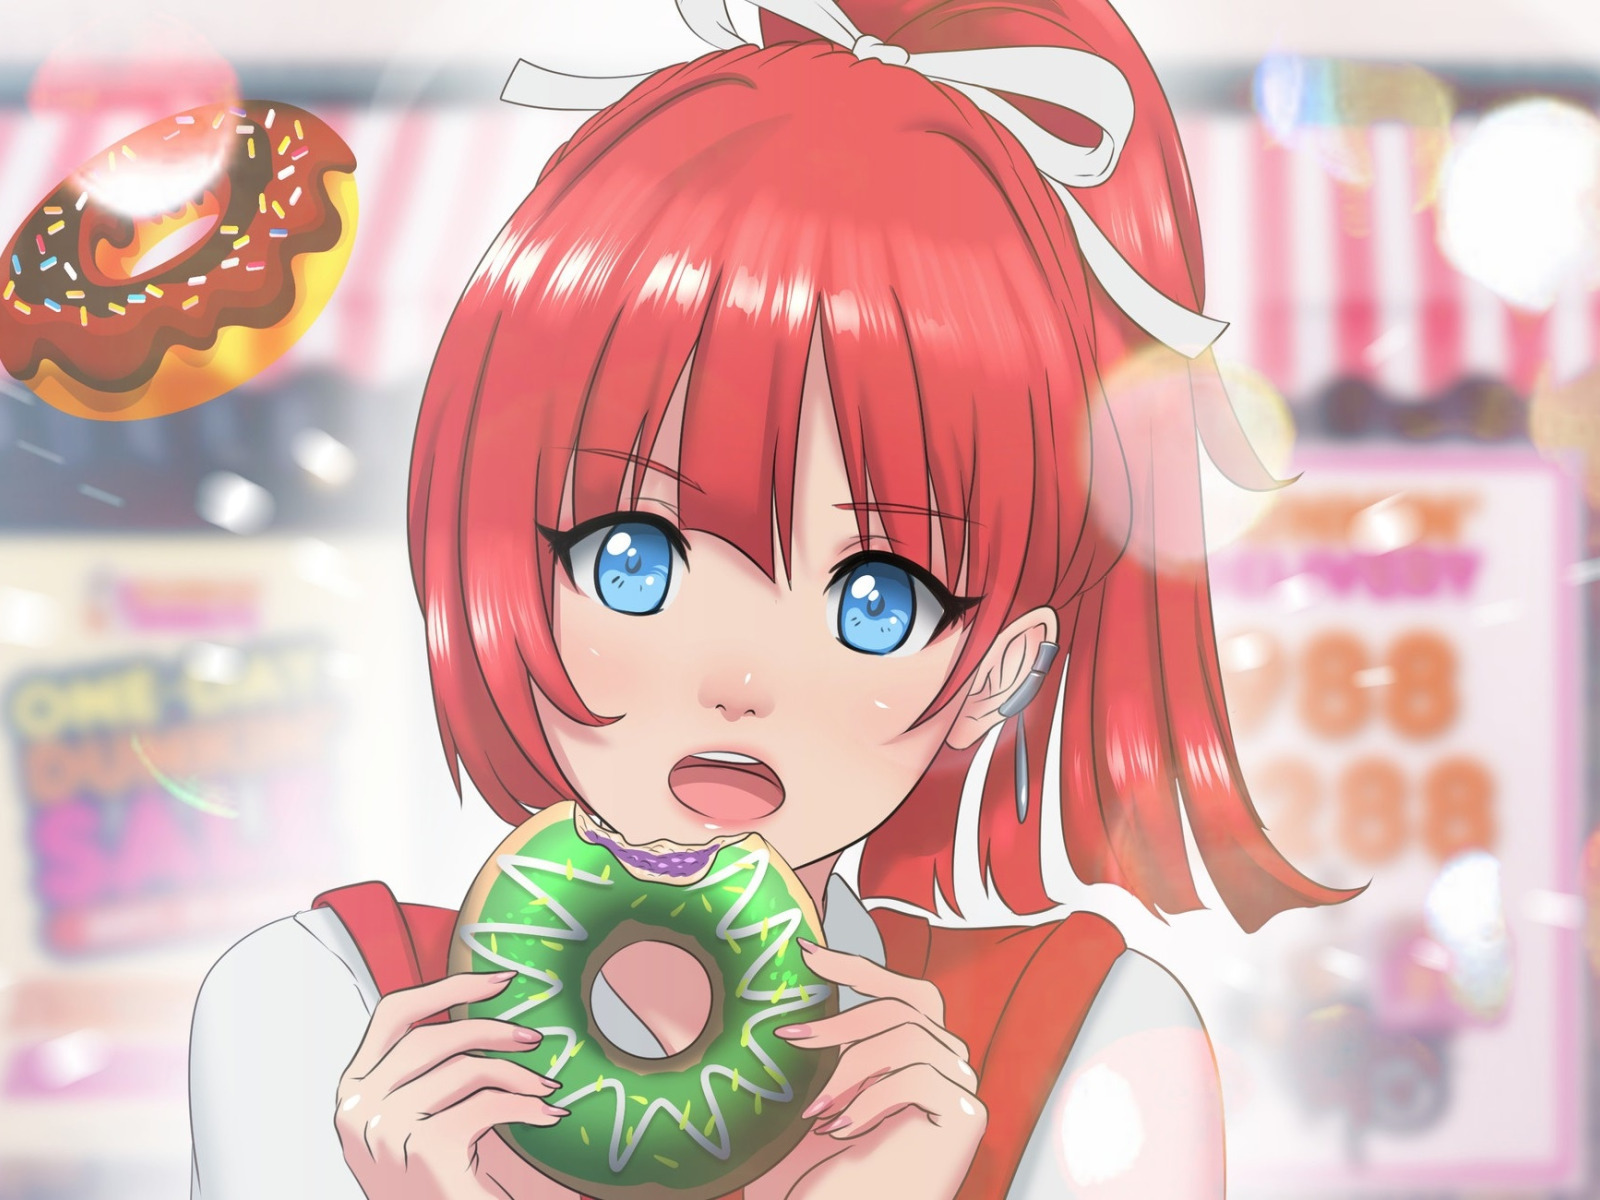 Anime donut